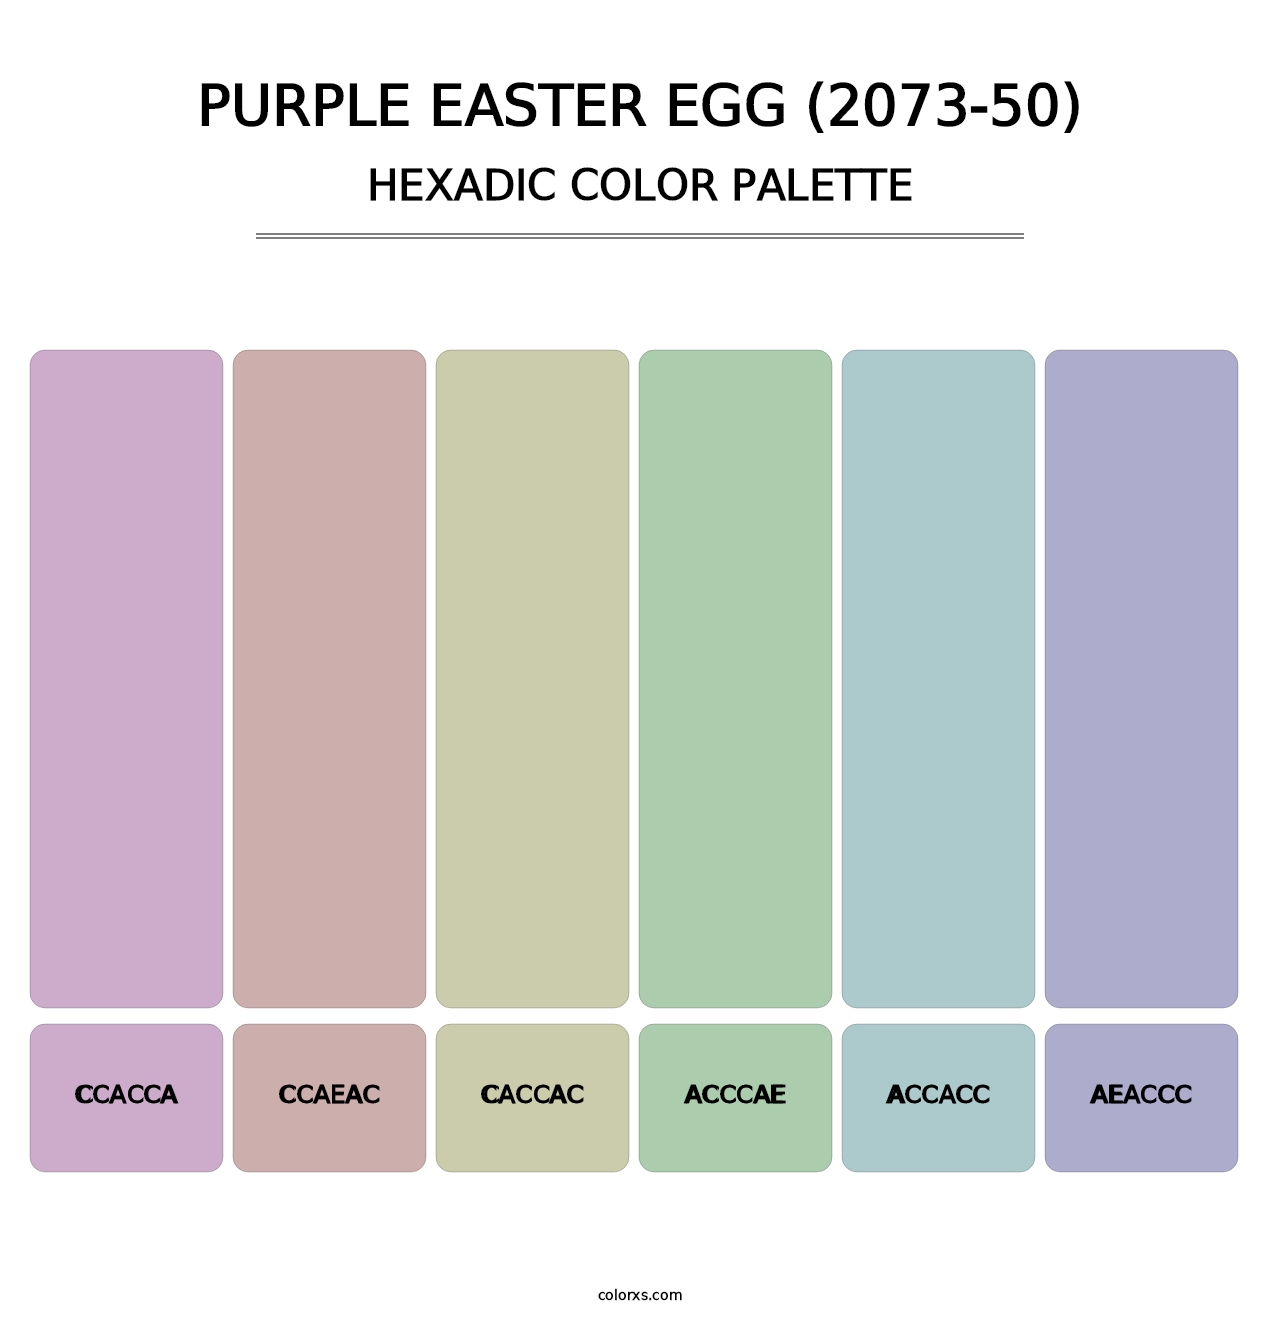 Purple Easter Egg (2073-50) - Hexadic Color Palette